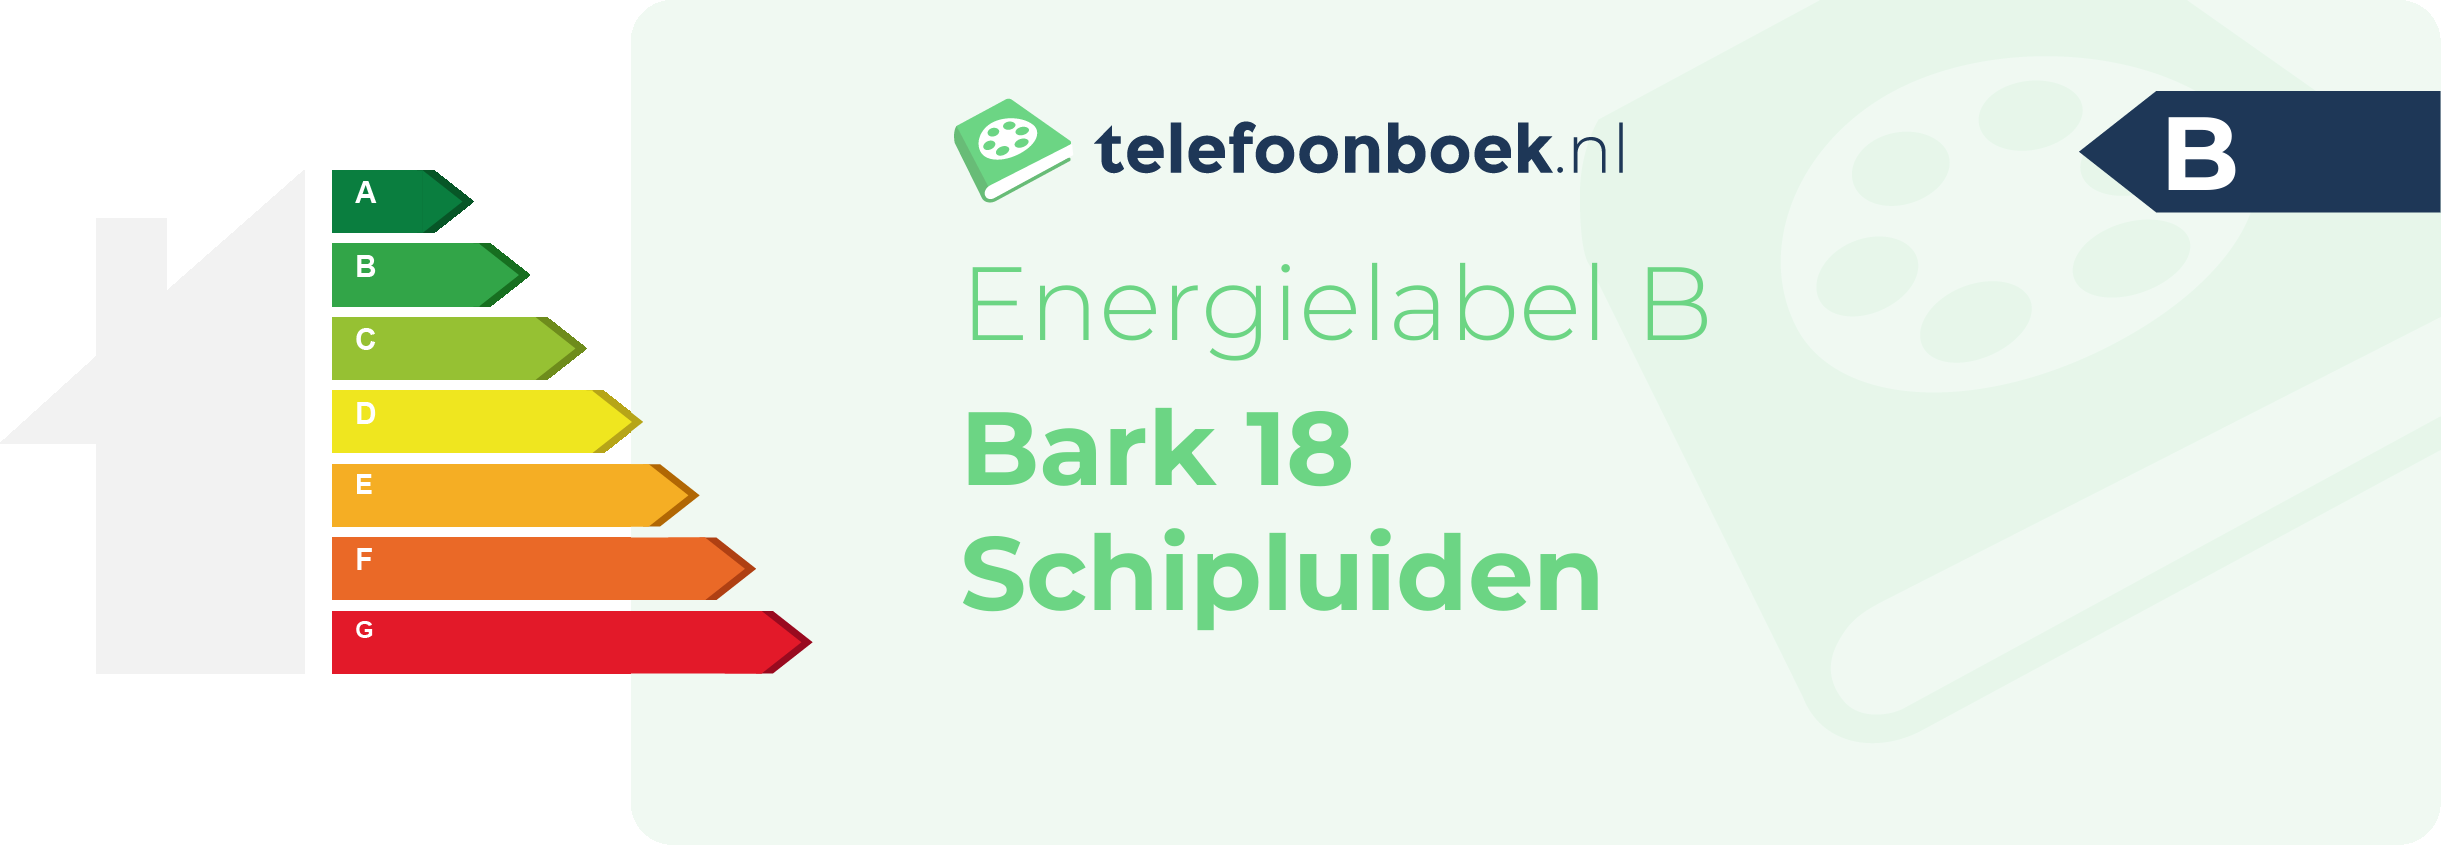 Energielabel Bark 18 Schipluiden